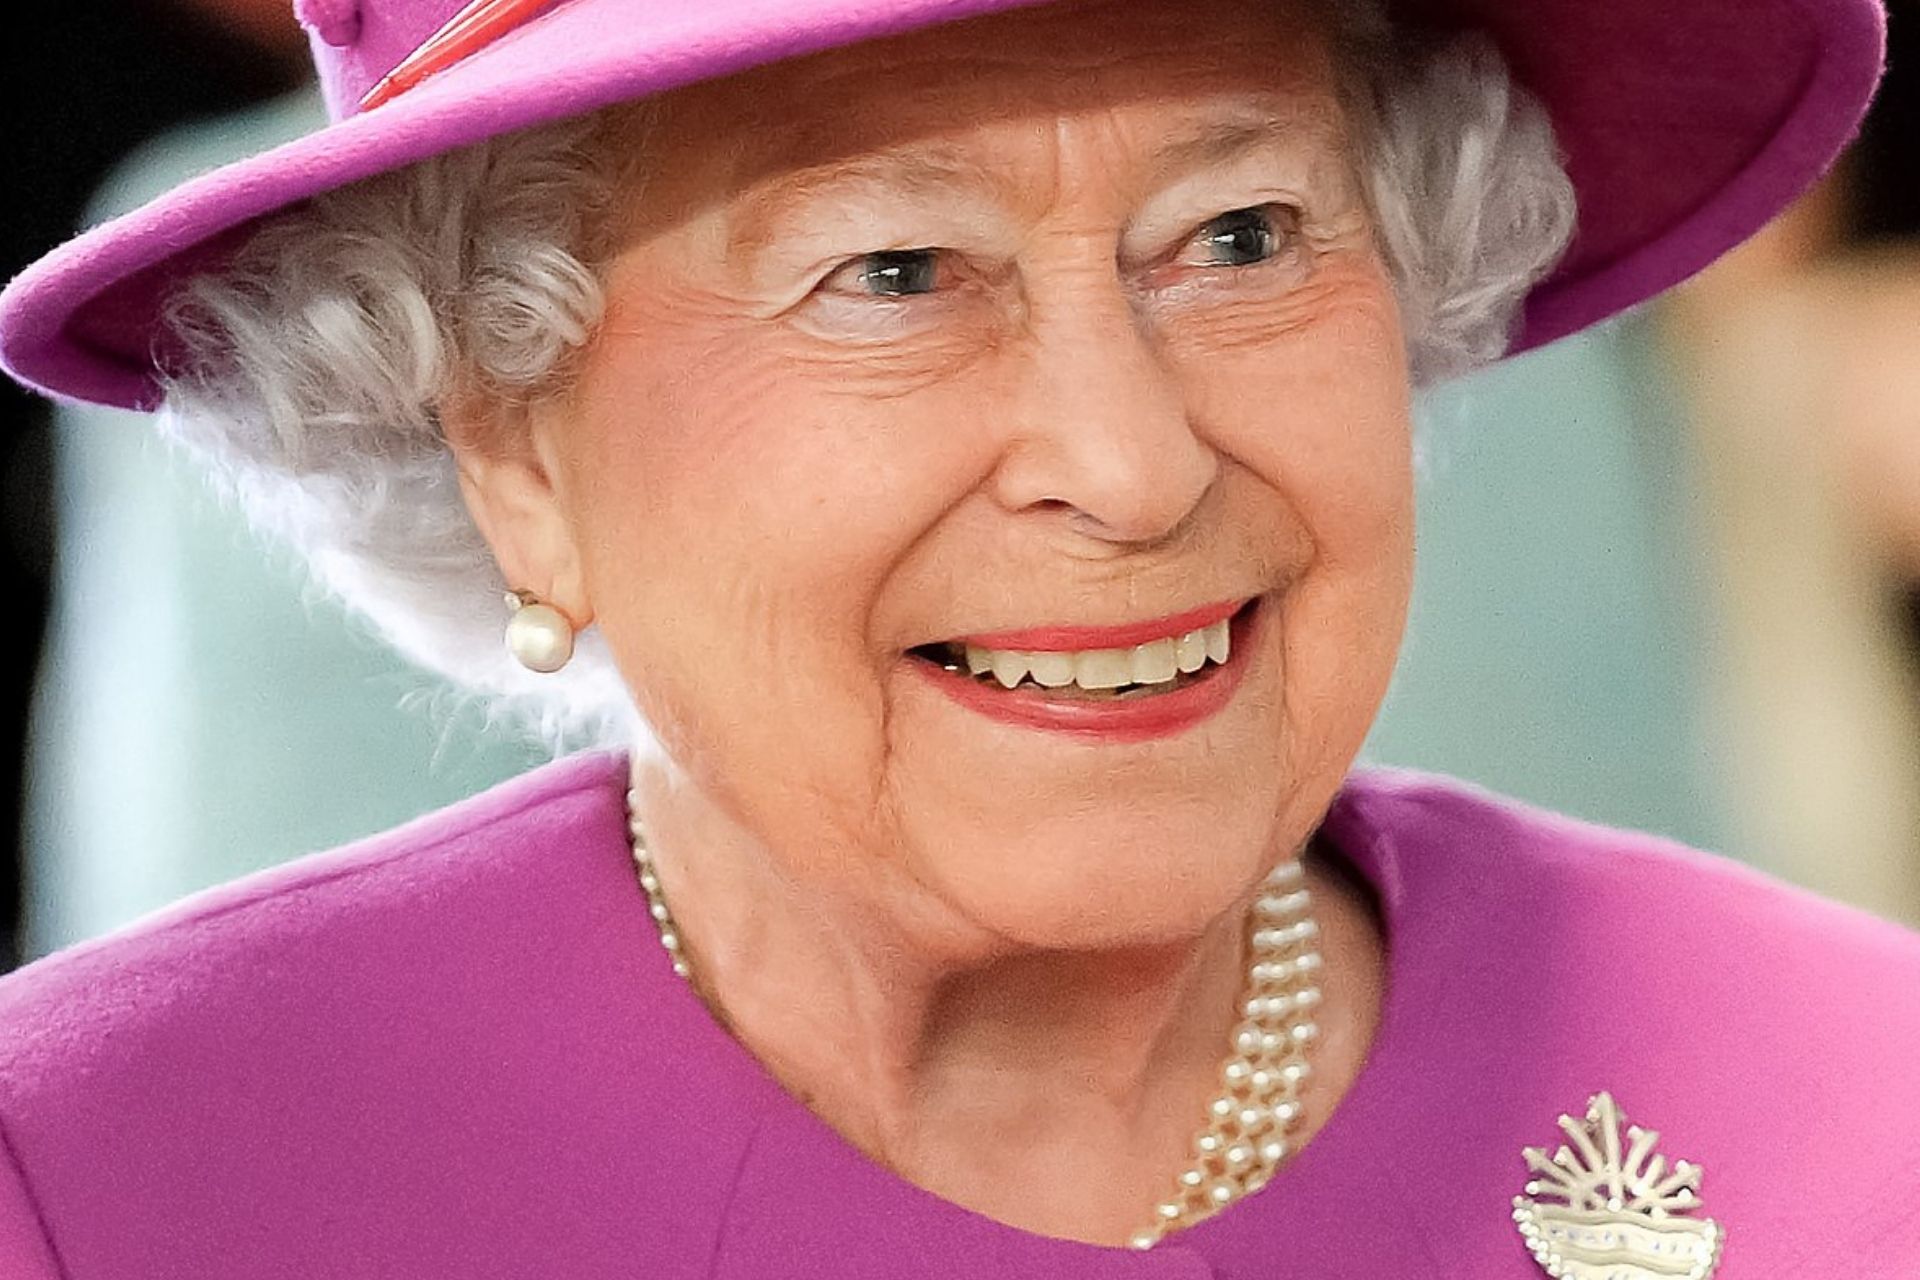 Queen Elizabeth